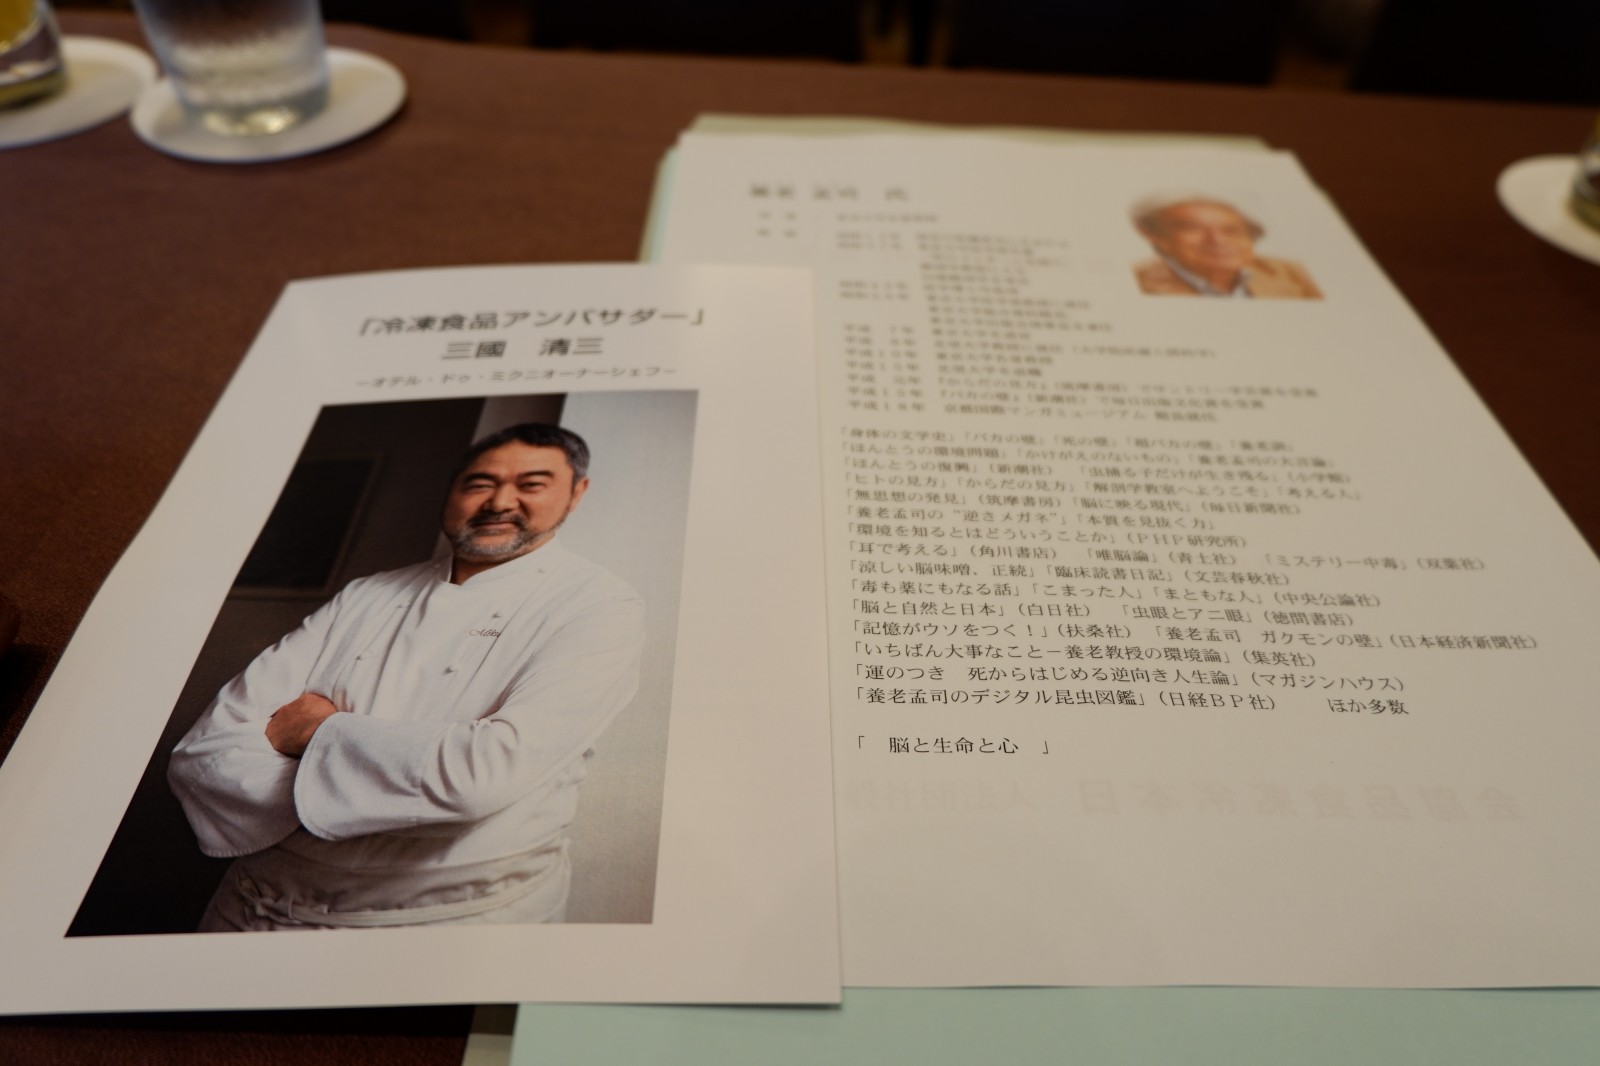 冷食協29年度総会、三國清三シェフが「冷凍食品アンバサダー」に